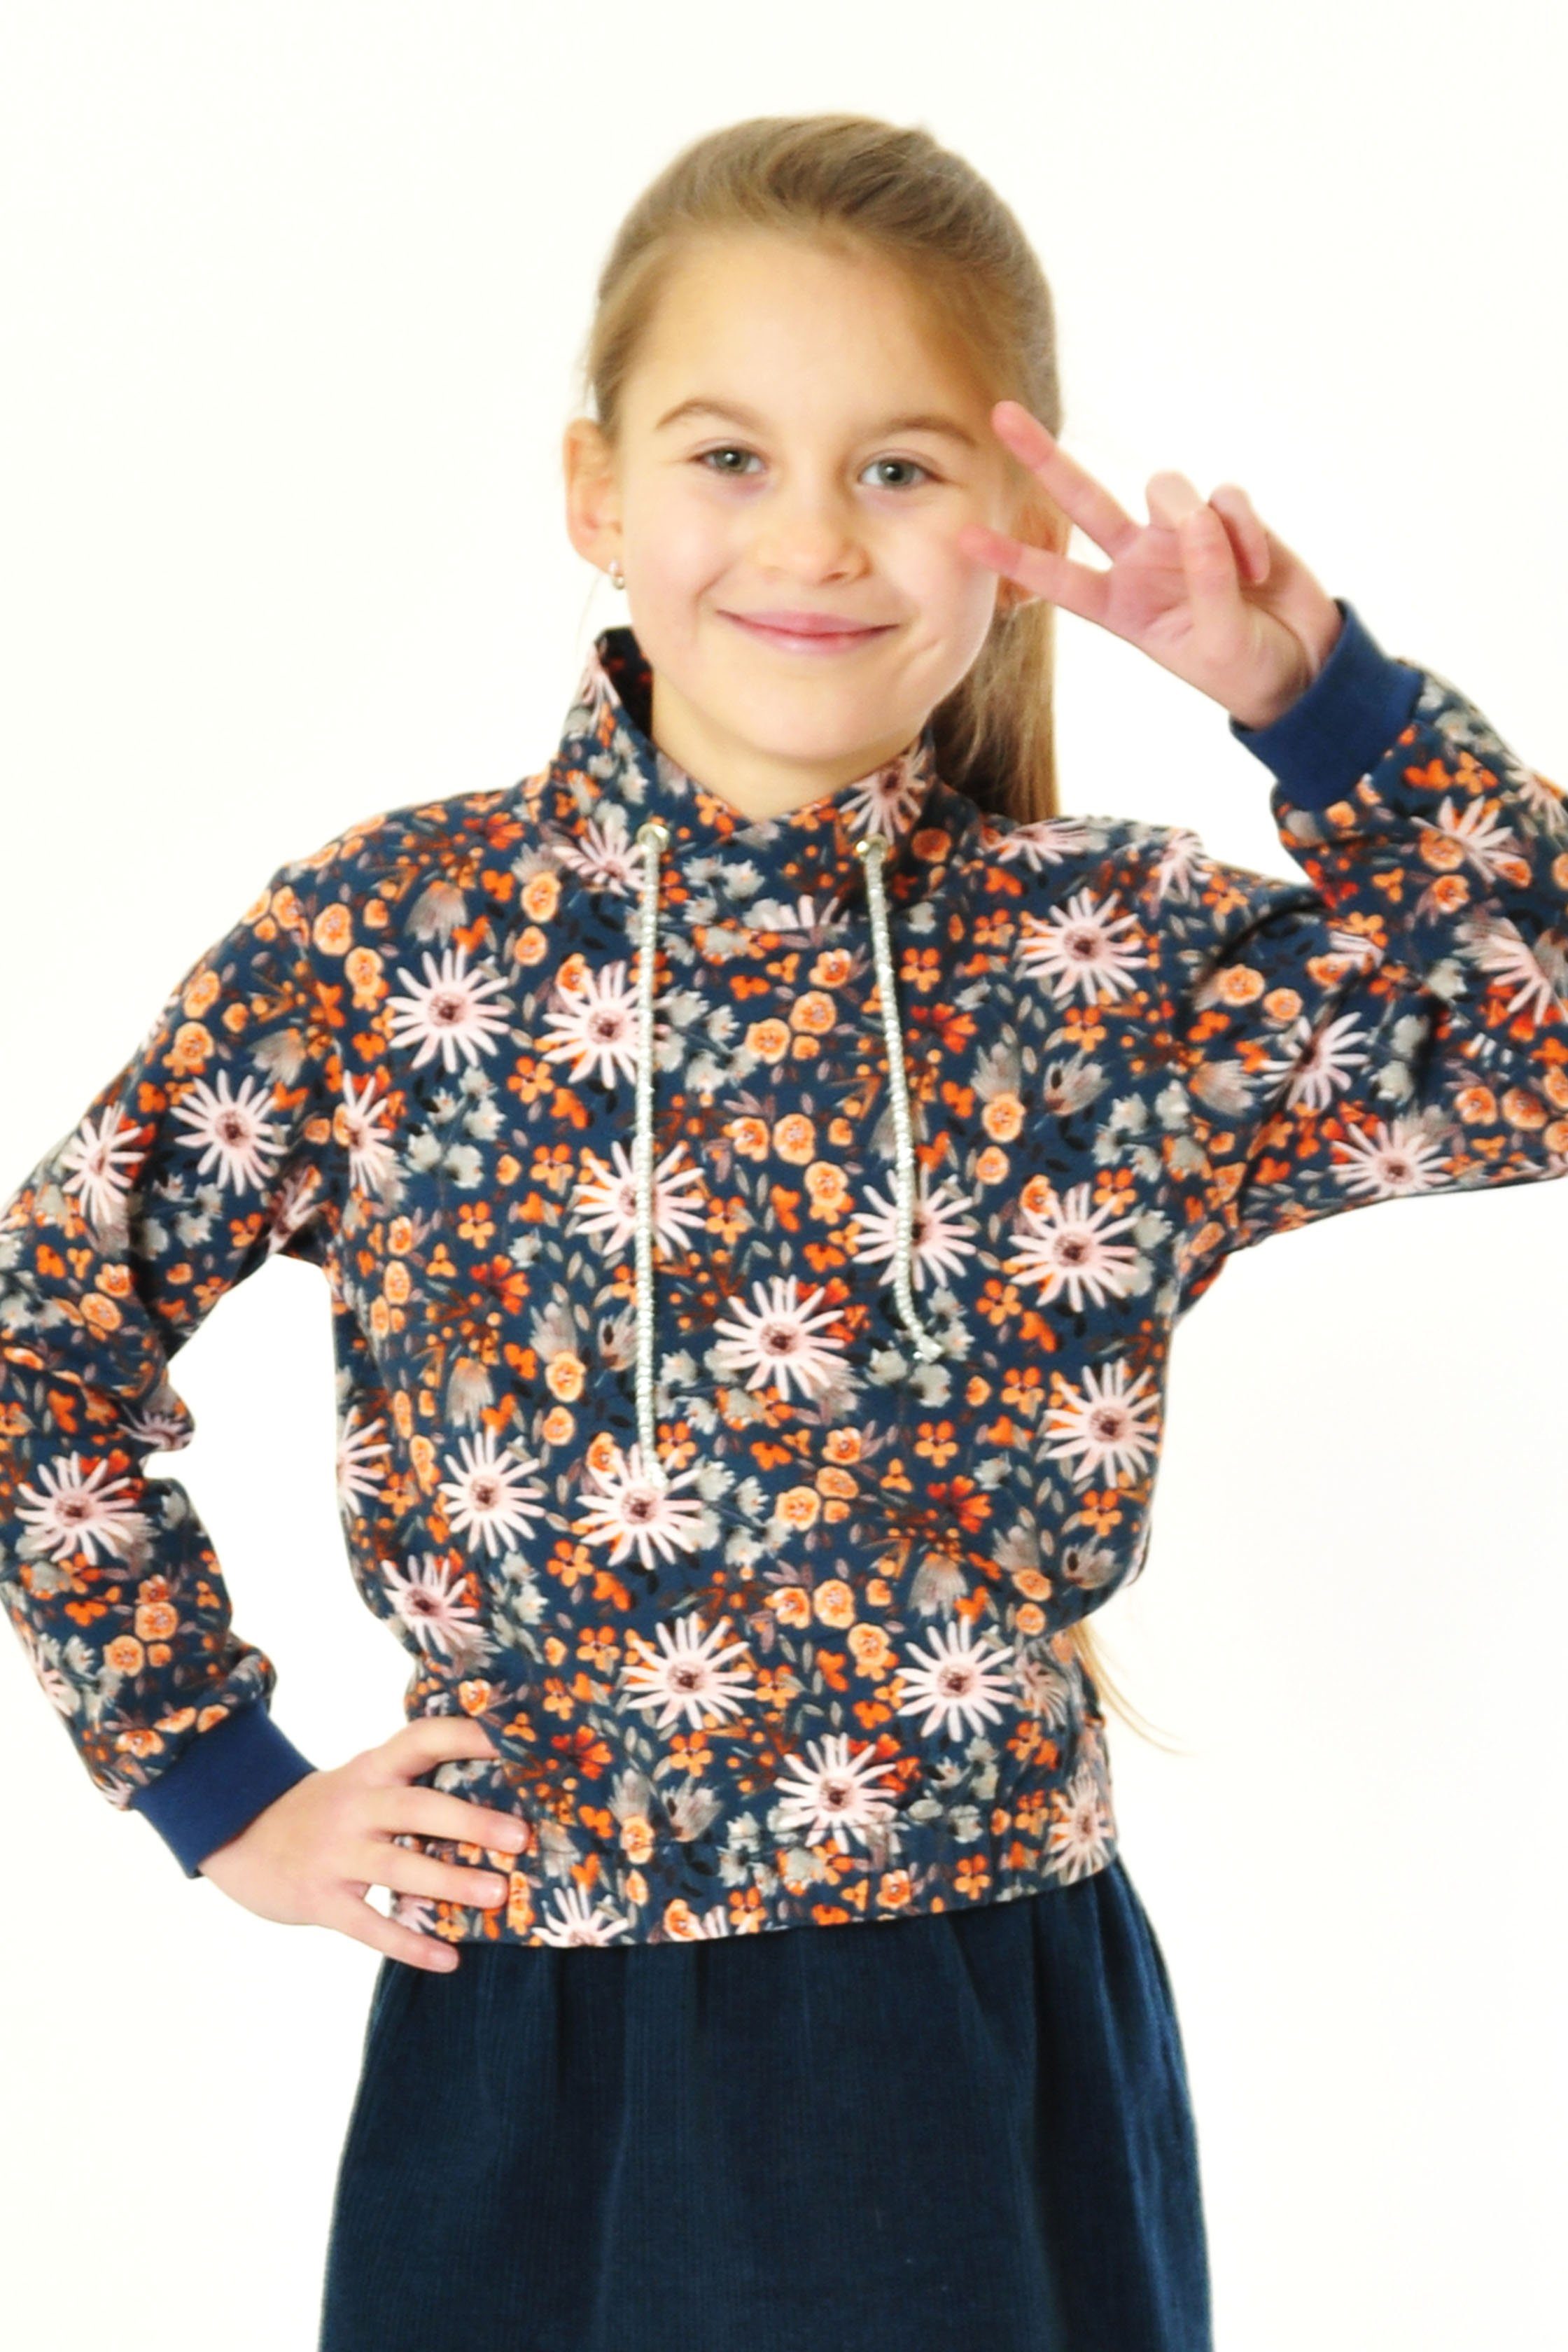 mit Baumwolle, für Mädchen Sweater Produktion blau coolismo Blumen Sweatshirt europäische Motivdruck